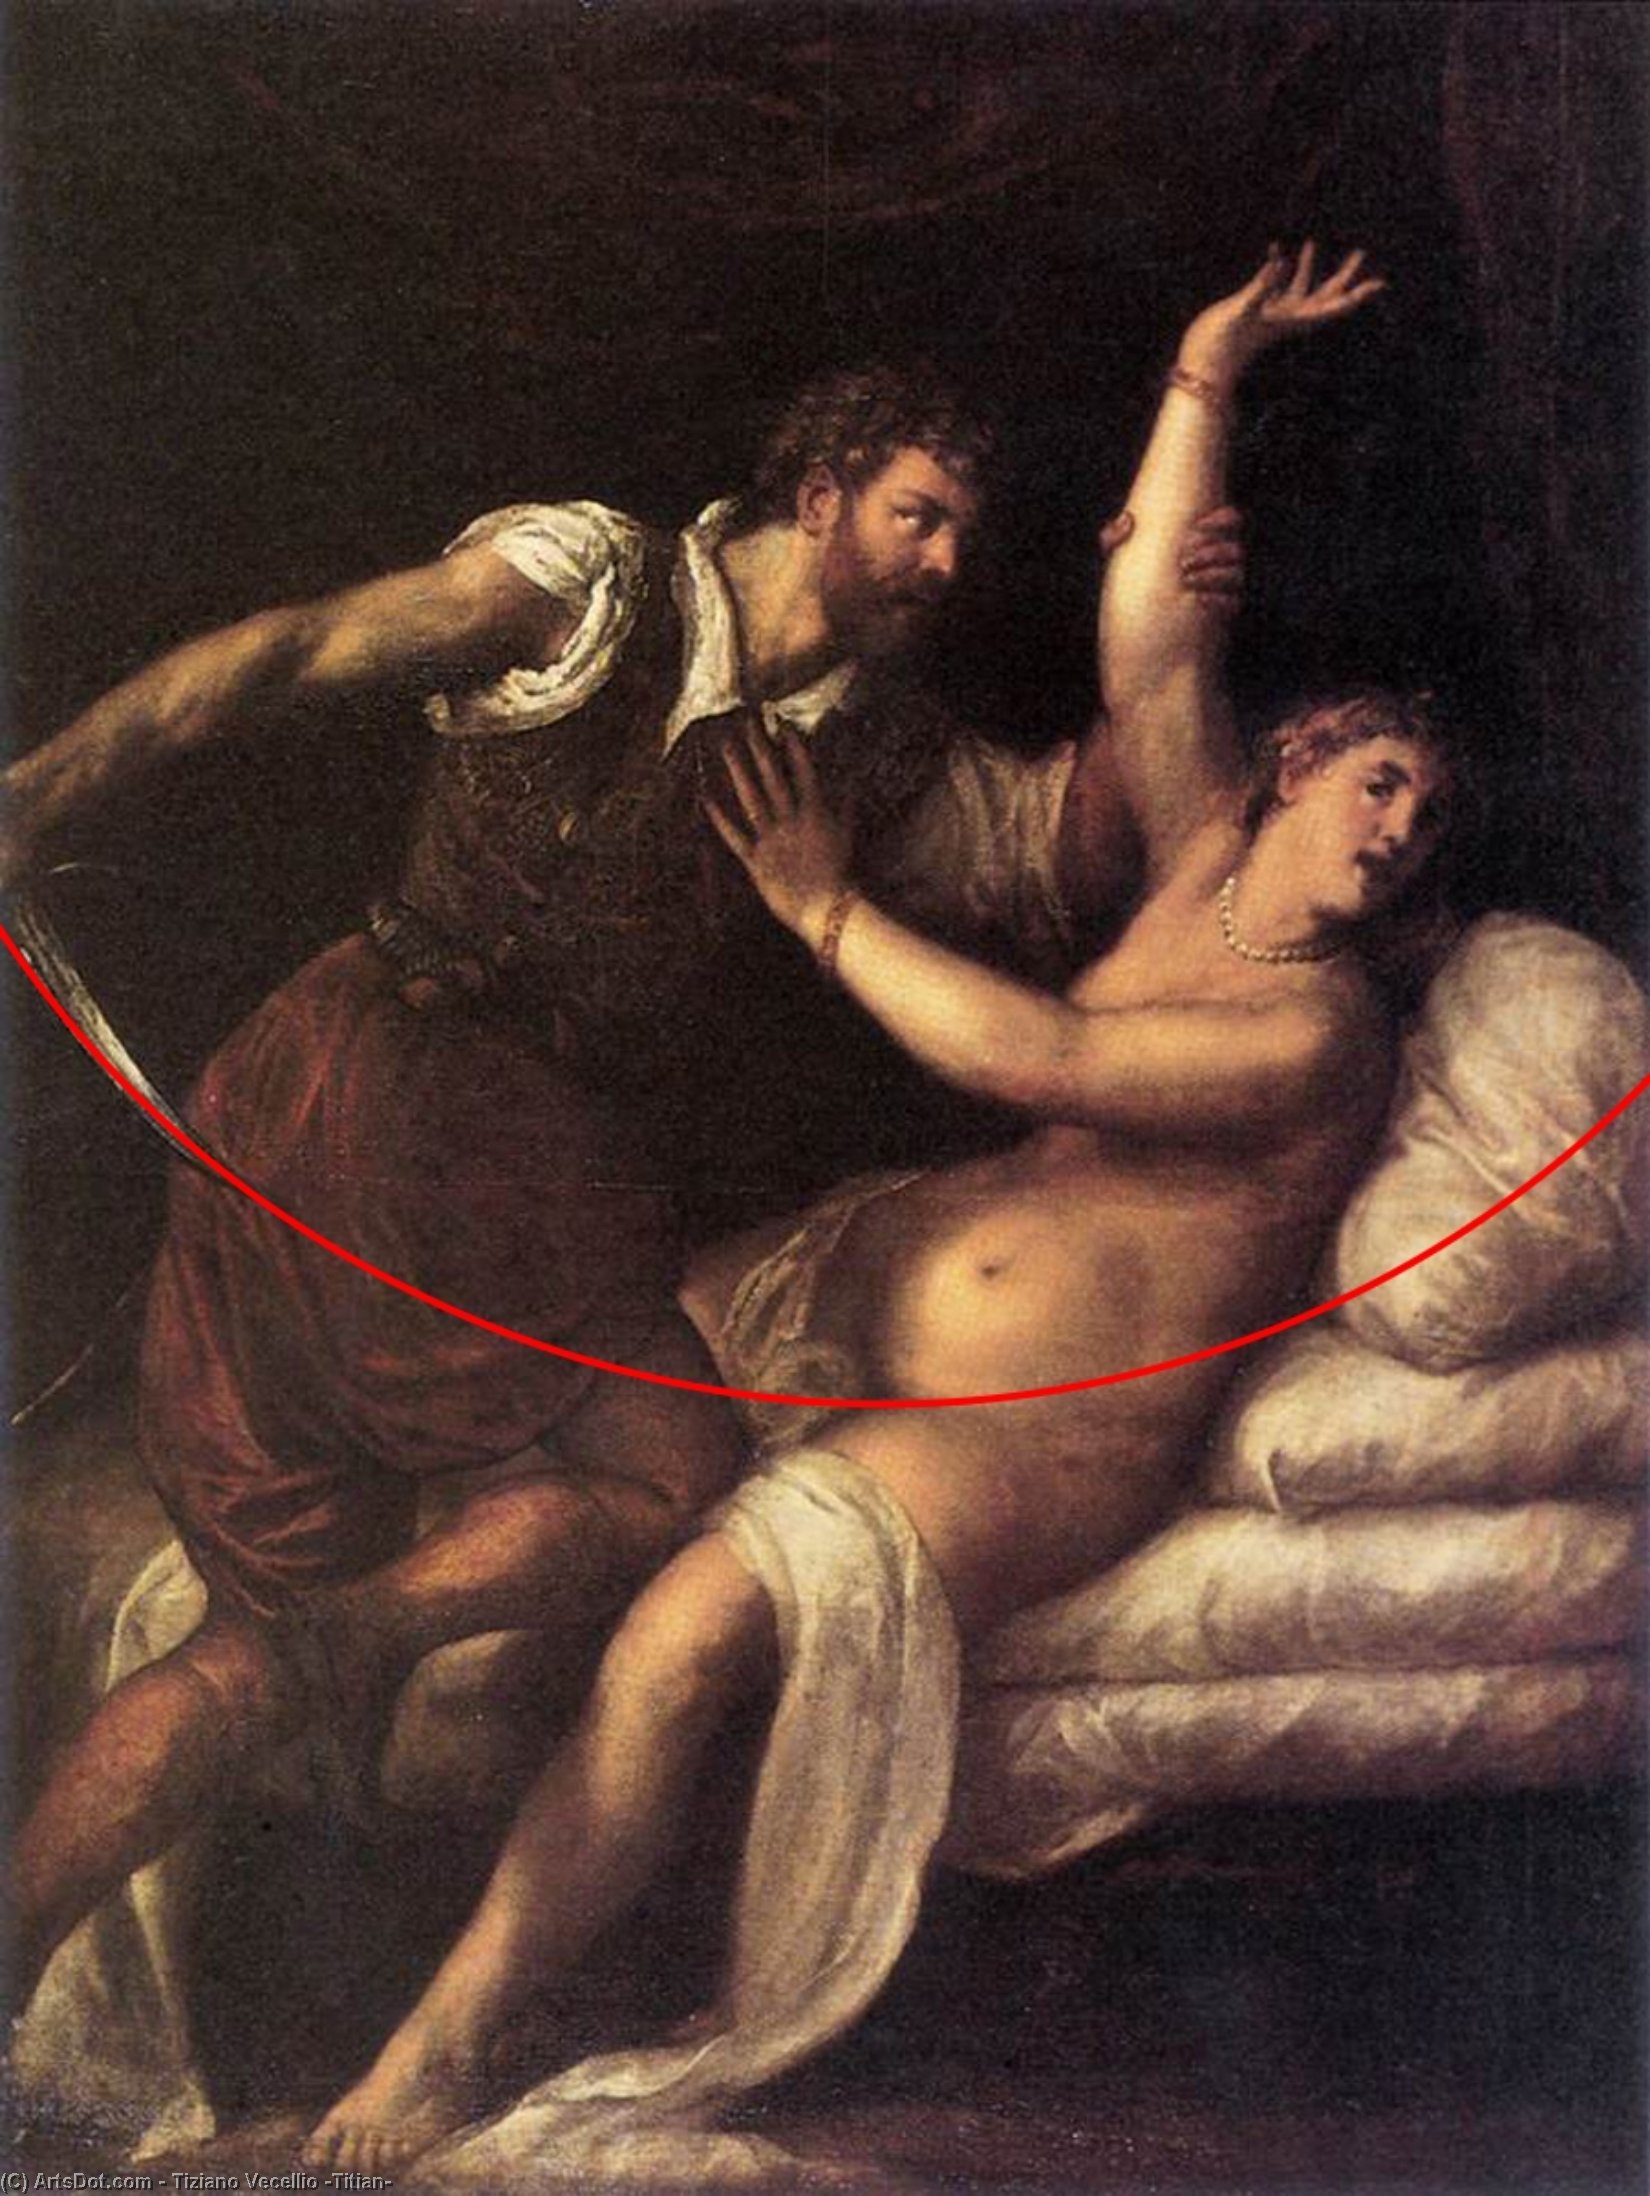 WikiOO.org - אנציקלופדיה לאמנויות יפות - ציור, יצירות אמנות Tiziano Vecellio (Titian) - Tarquin and Lucretia